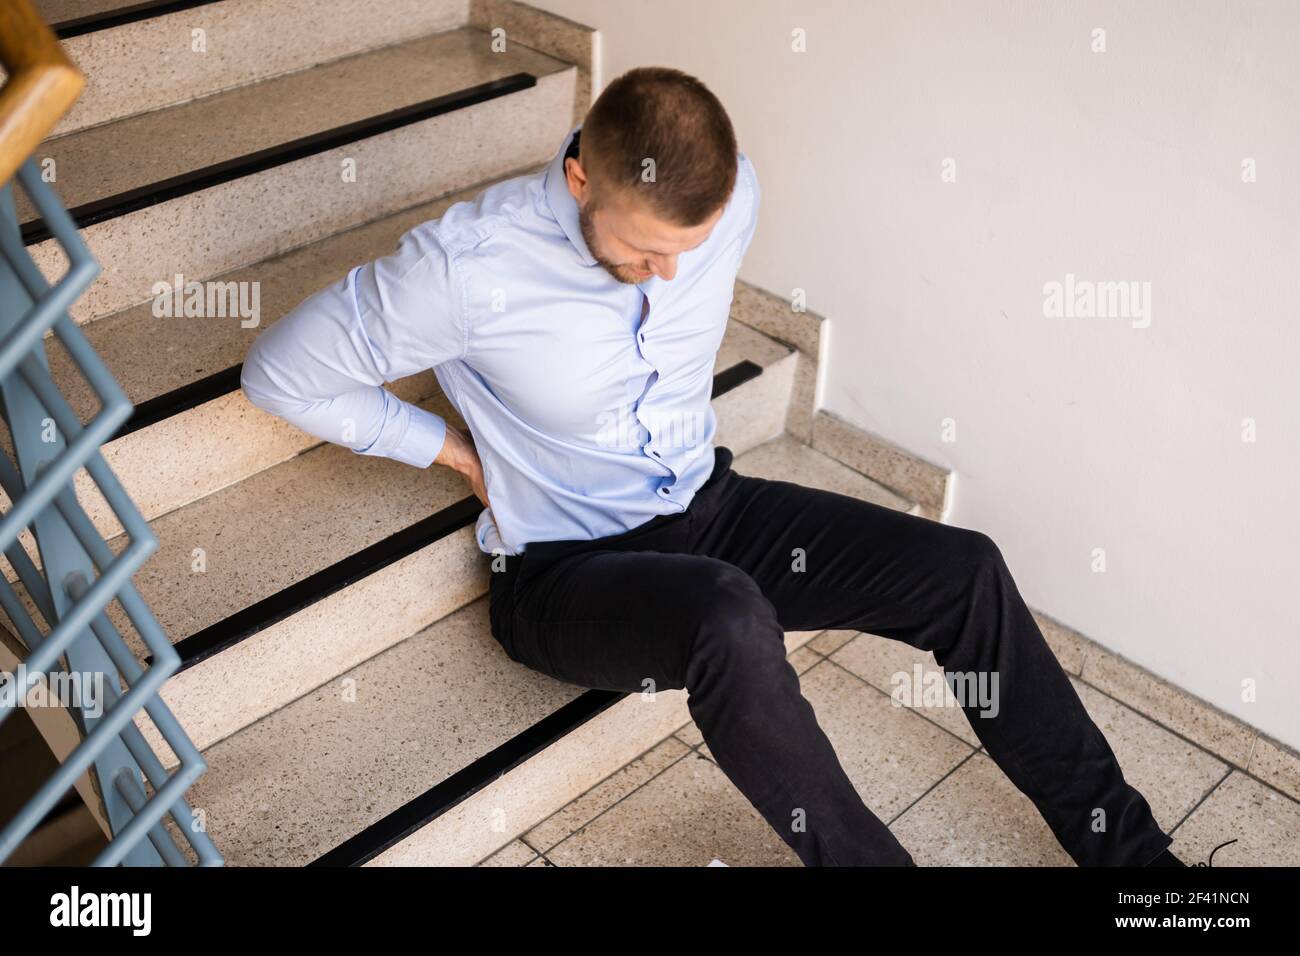 Unfall Mit Fall- Und Fallverletzung Am Arbeitsplatz. Mann Fiel Die Treppe Hinunter Stockfoto